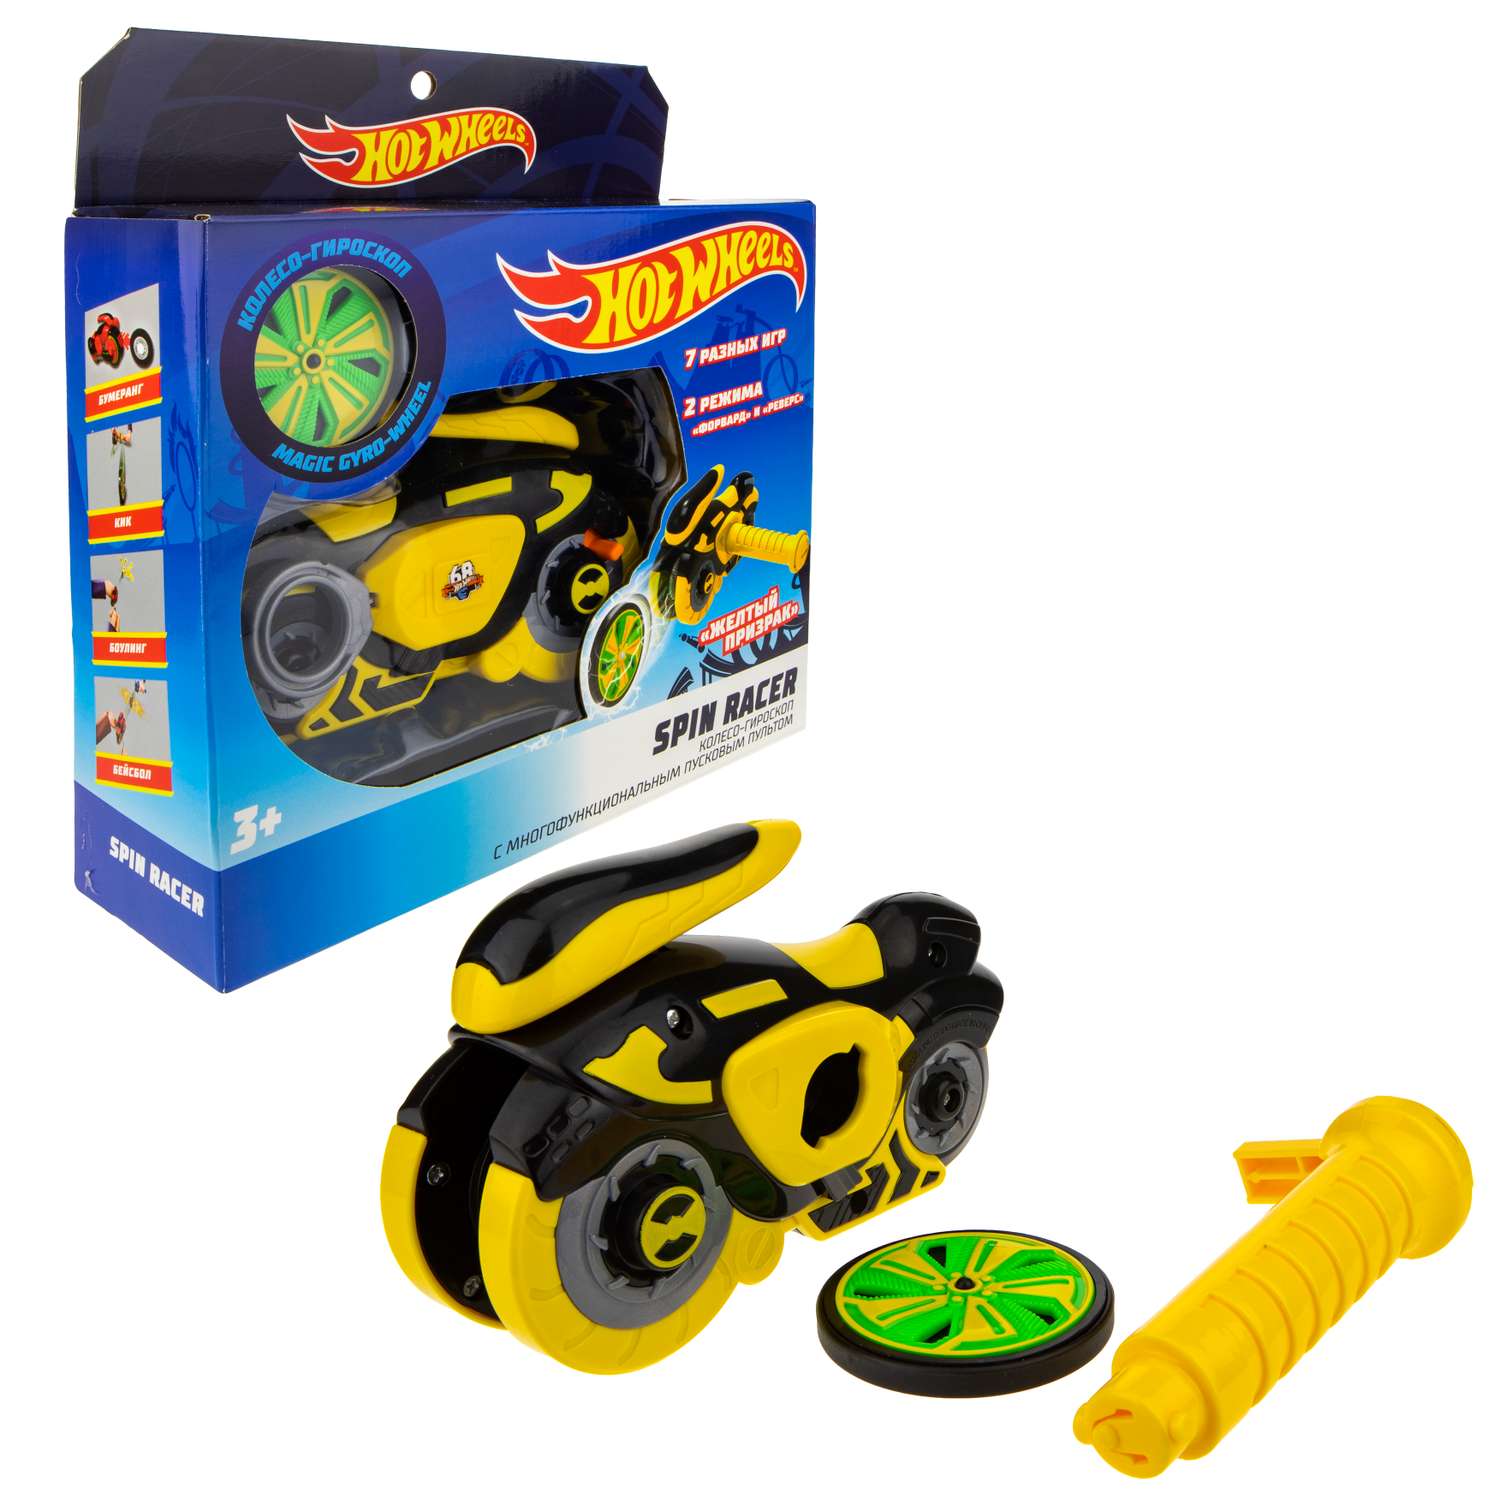 Игровой набор Hot Wheels Spin Racer Желтый Призрак игрушечный мотоцикл с колесом-гироскопом Т19371 - фото 2